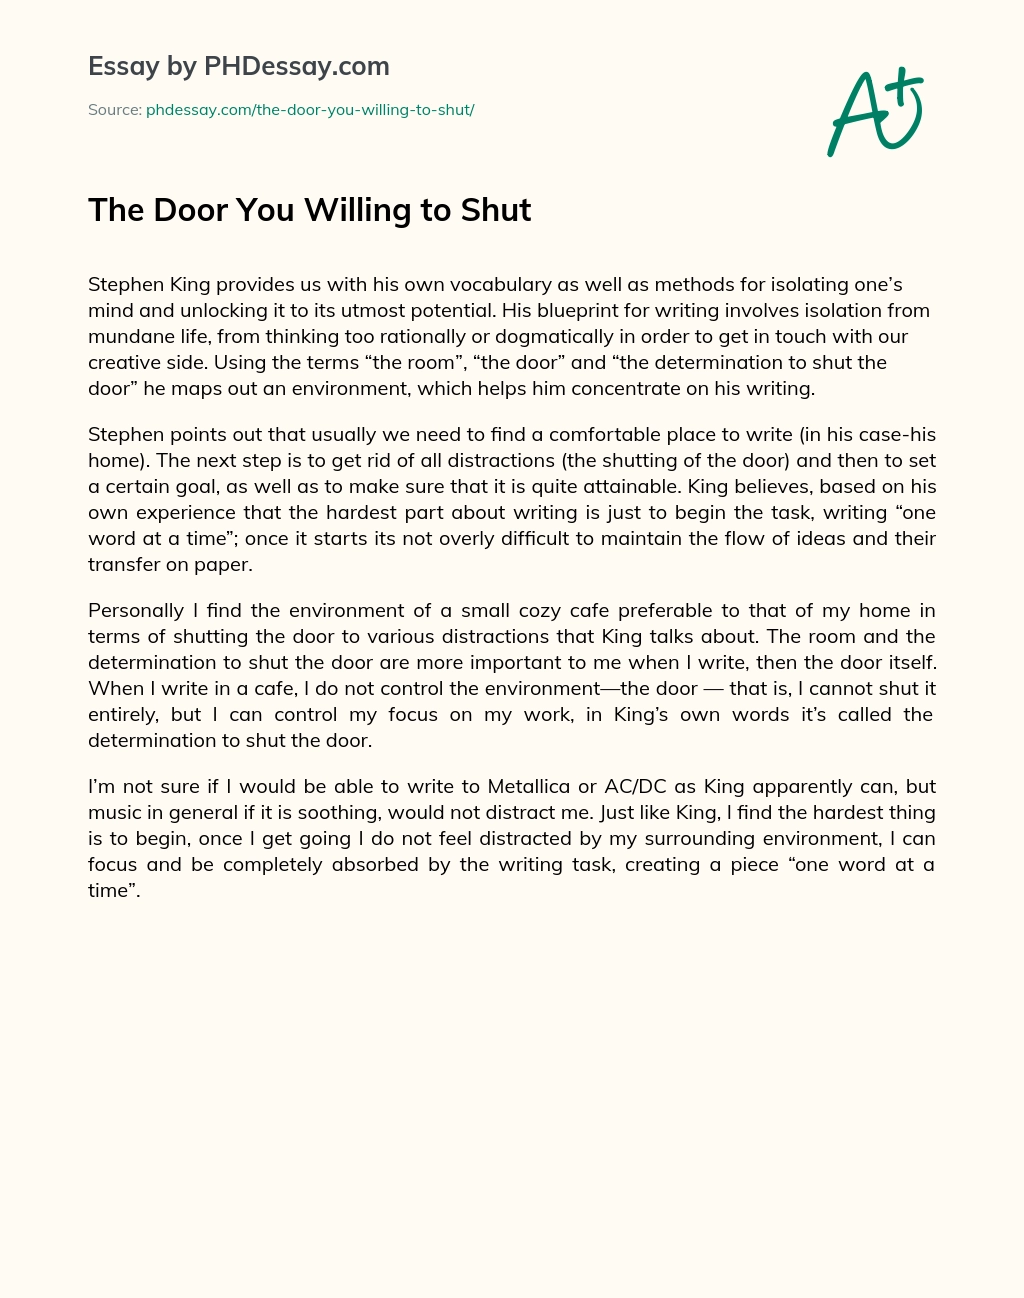 The Door You Willing to Shut essay